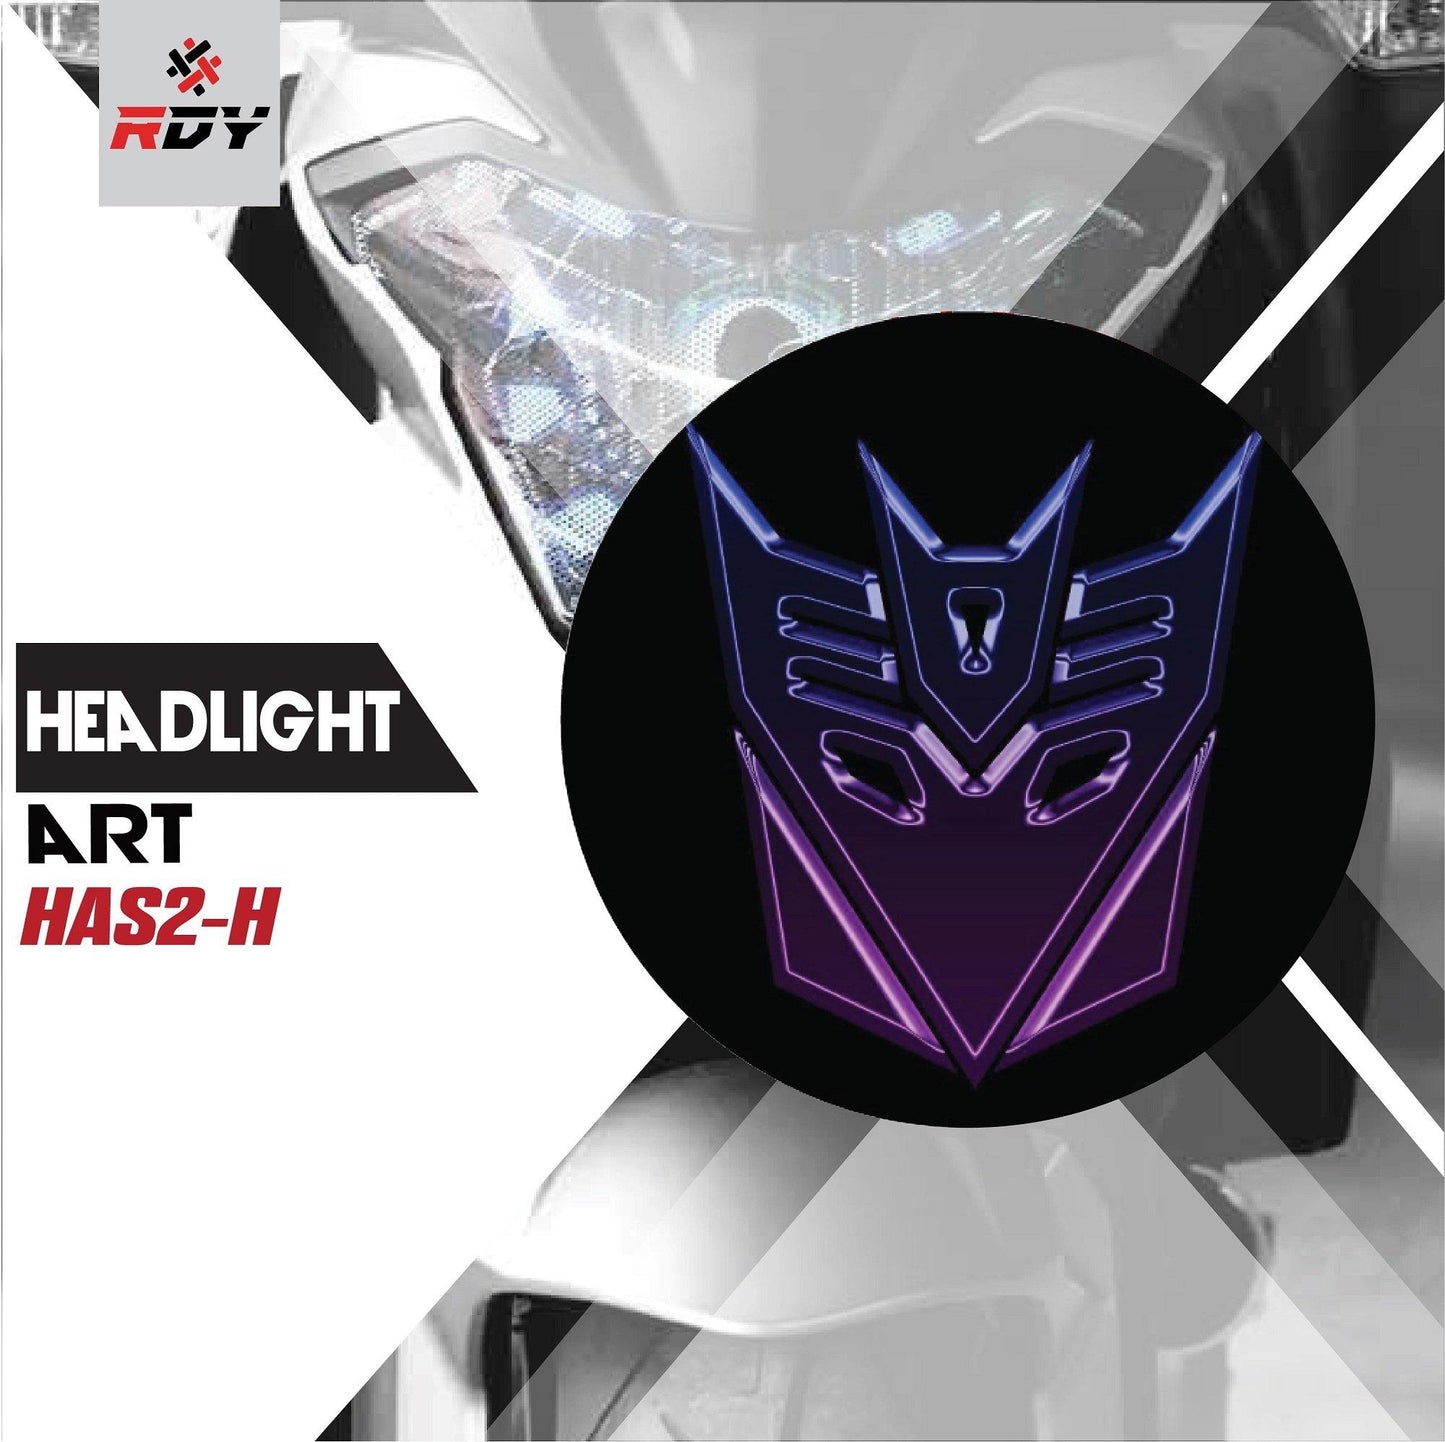 RDY Headlight Art fits for Suzuki SV650 - Durian Bikers